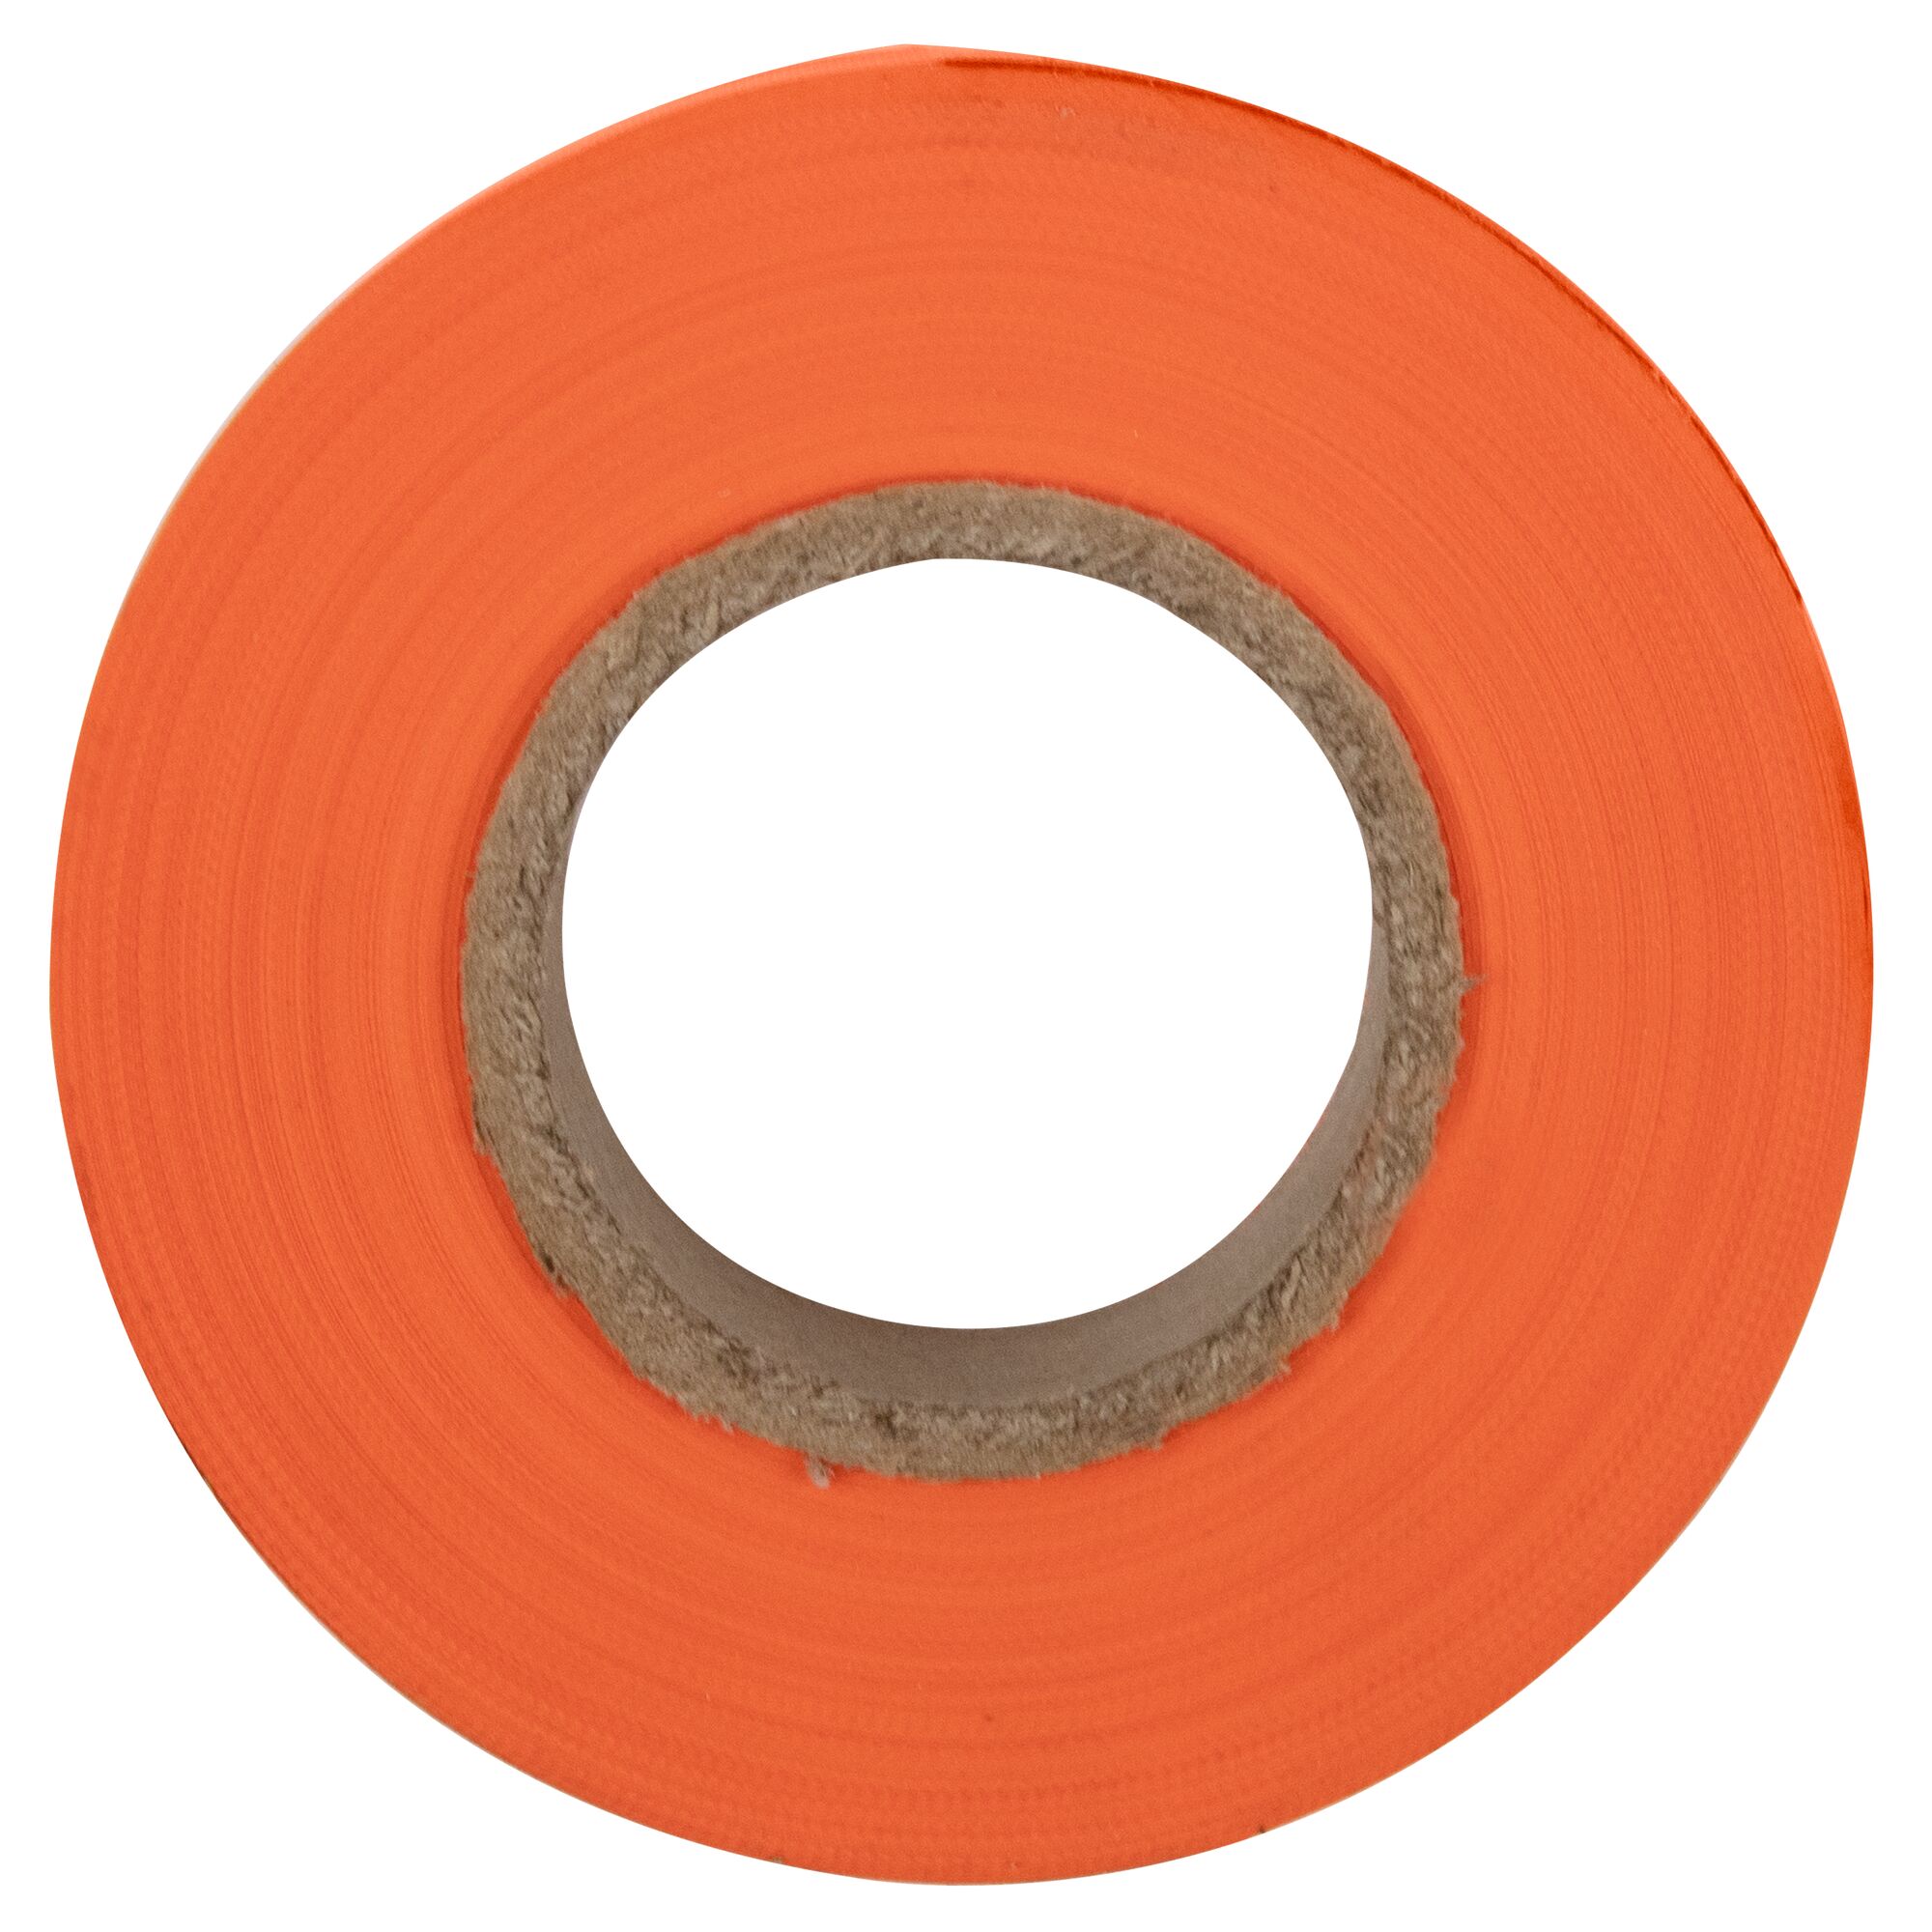 Hình ảnh 1 của mặt hàng Băng dính PVC màu cam Irwin